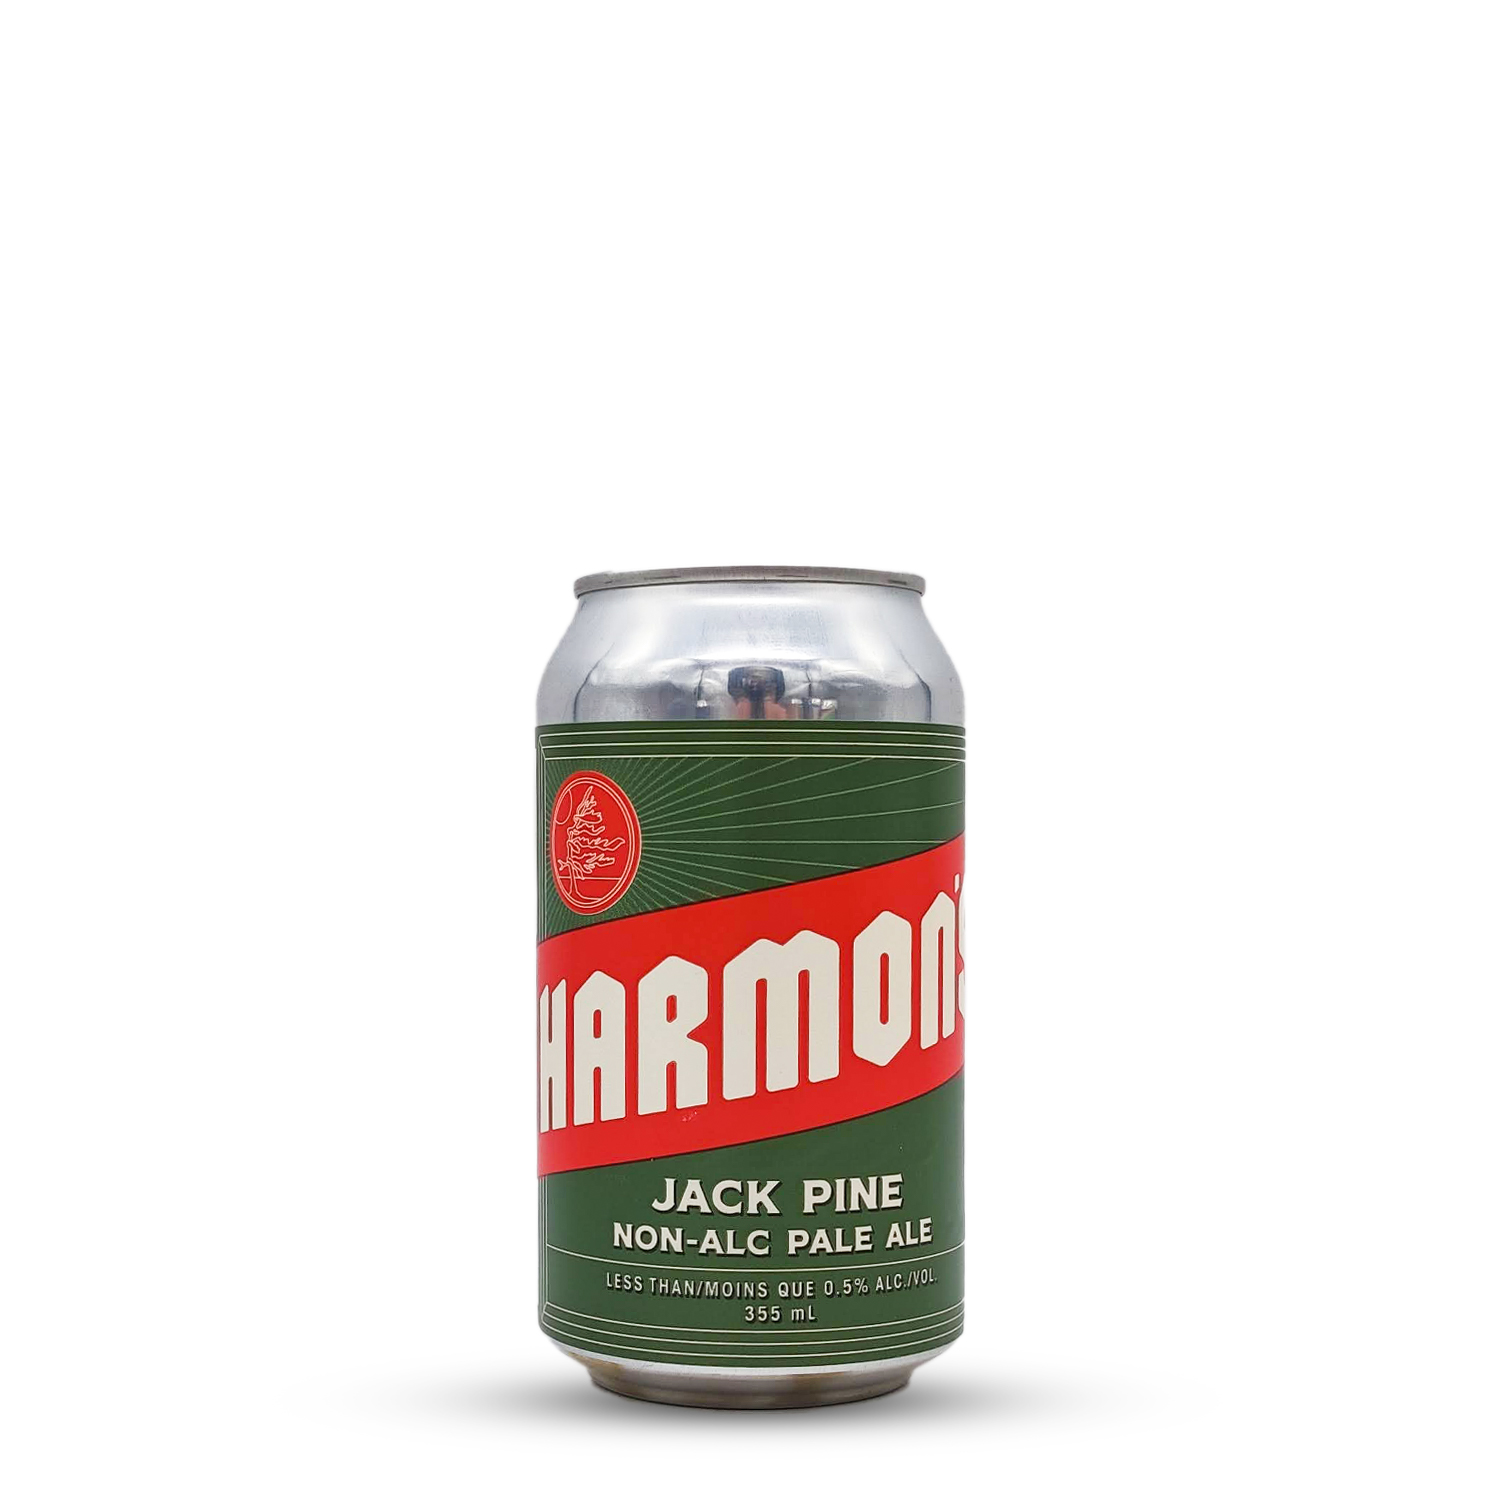 Jack Pine Non-Alc Pale Ale | Harmon's (USA) | 0,355L - 0,5%